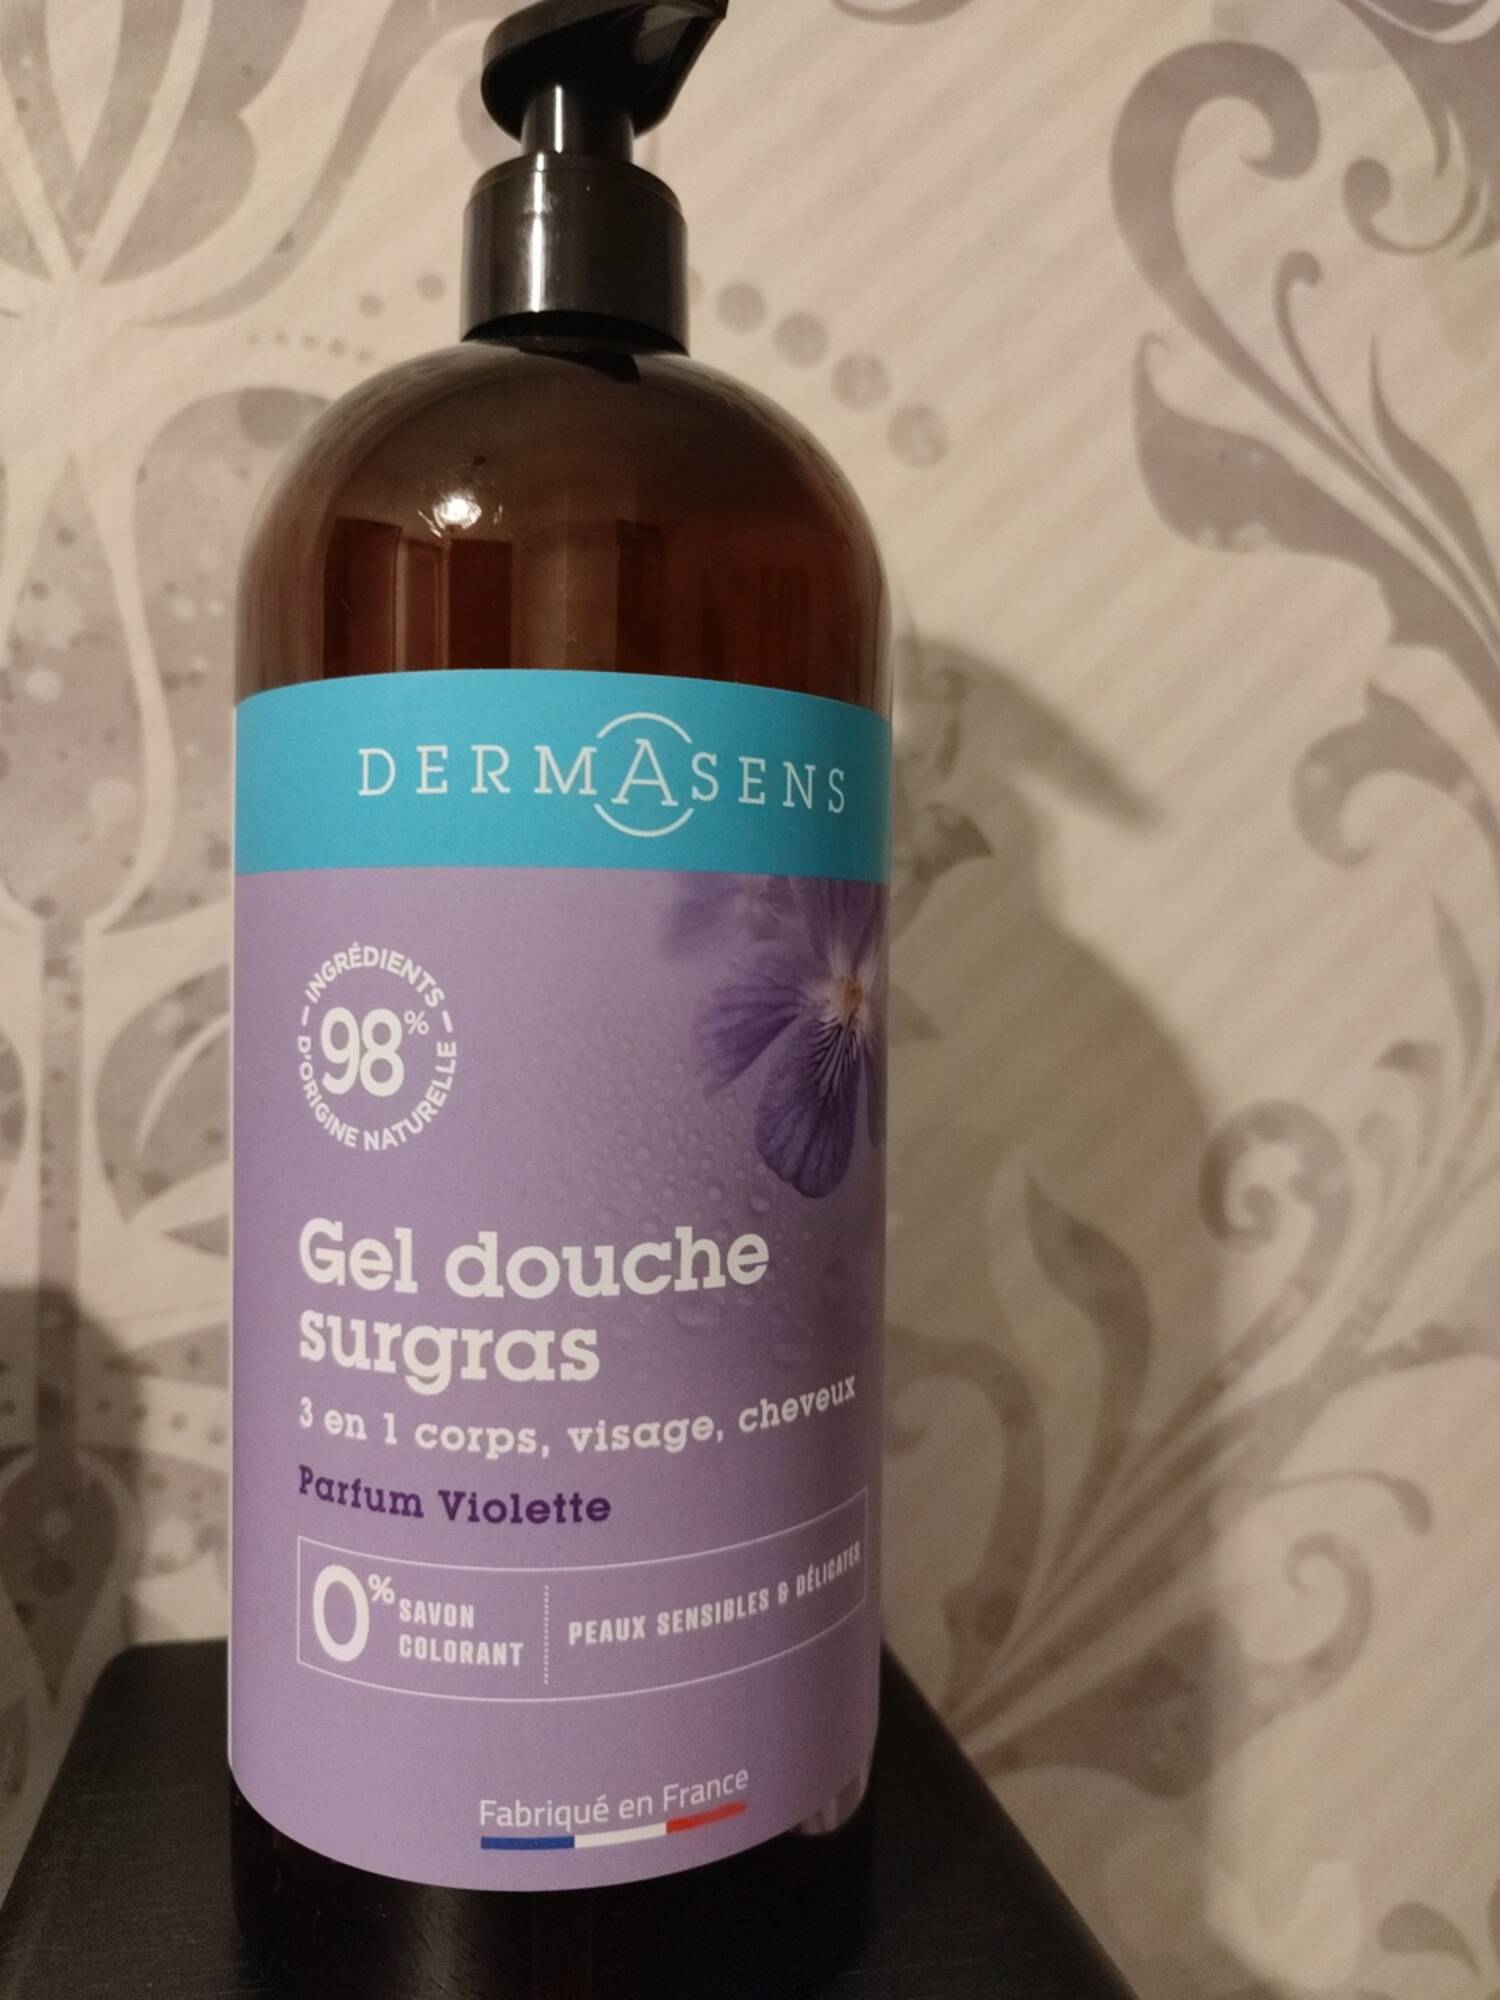 DERMASENS - Parfum violette - Gel douche surgras